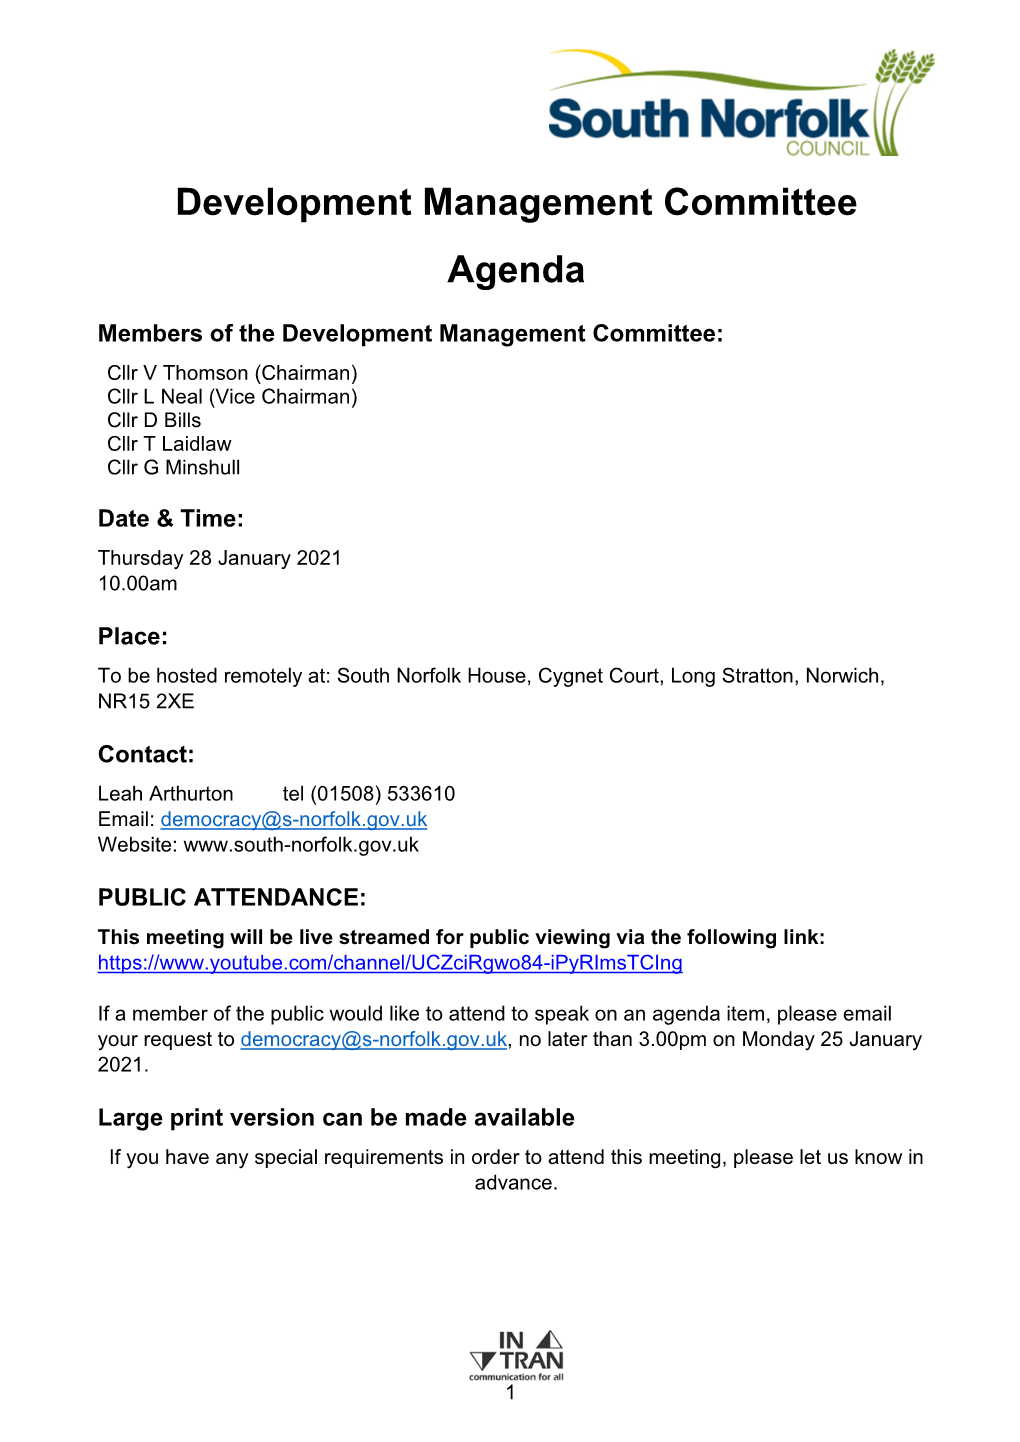 Development Management Committee Agenda 28 January 2021